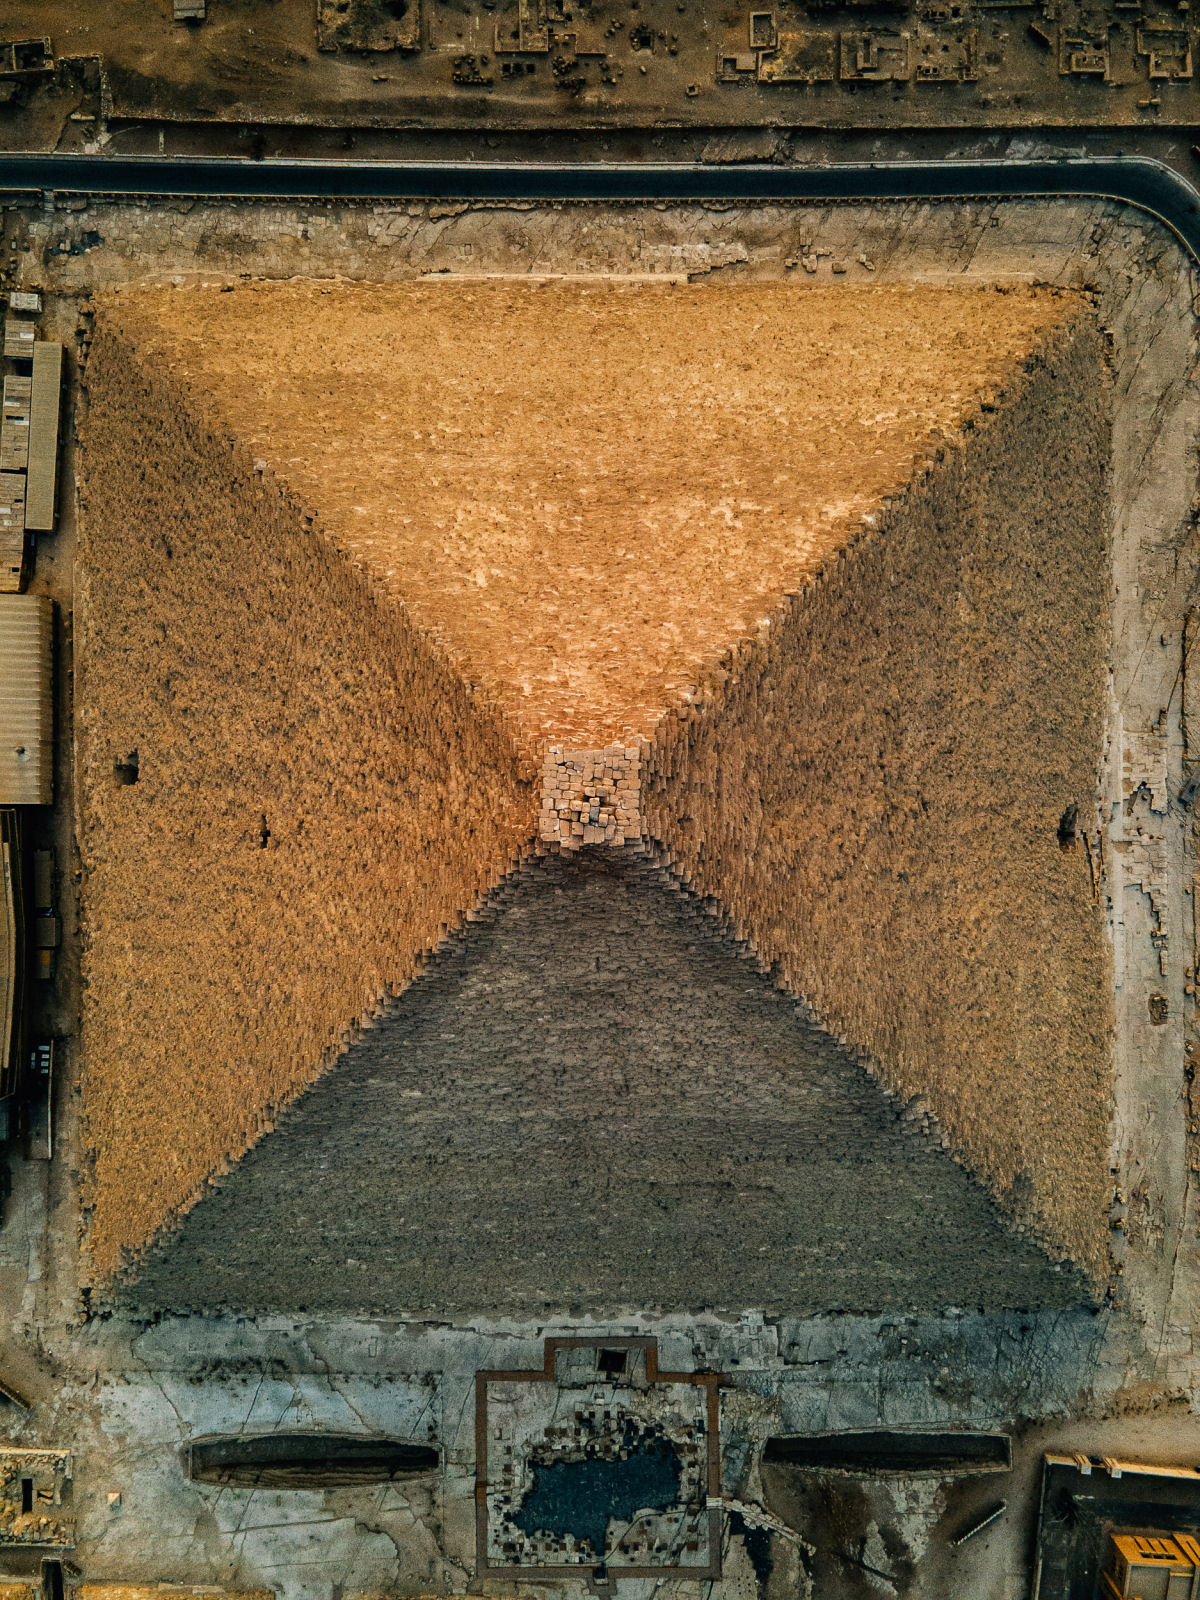 Vistas aéreas de Gizé apresentam a pirâmide de uma perspectiva bem incomum 02